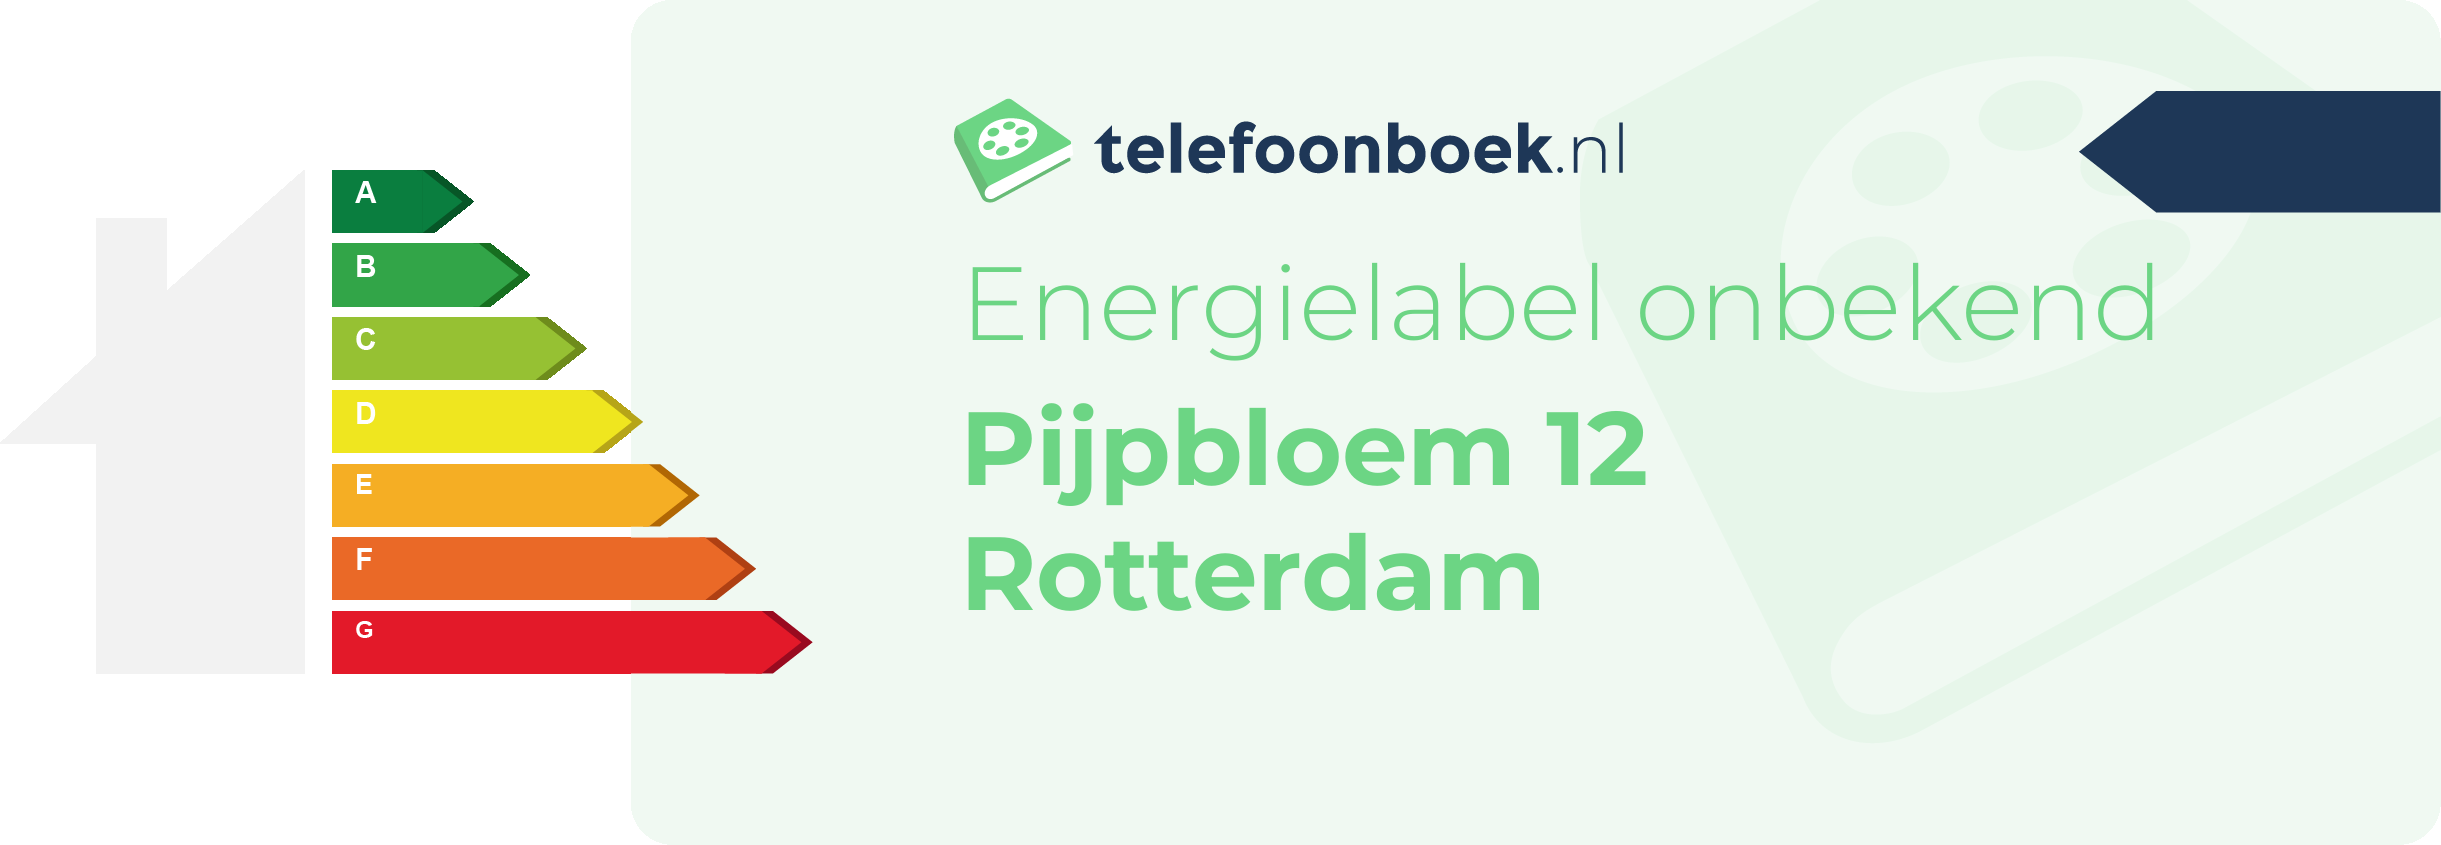 Energielabel Pijpbloem 12 Rotterdam